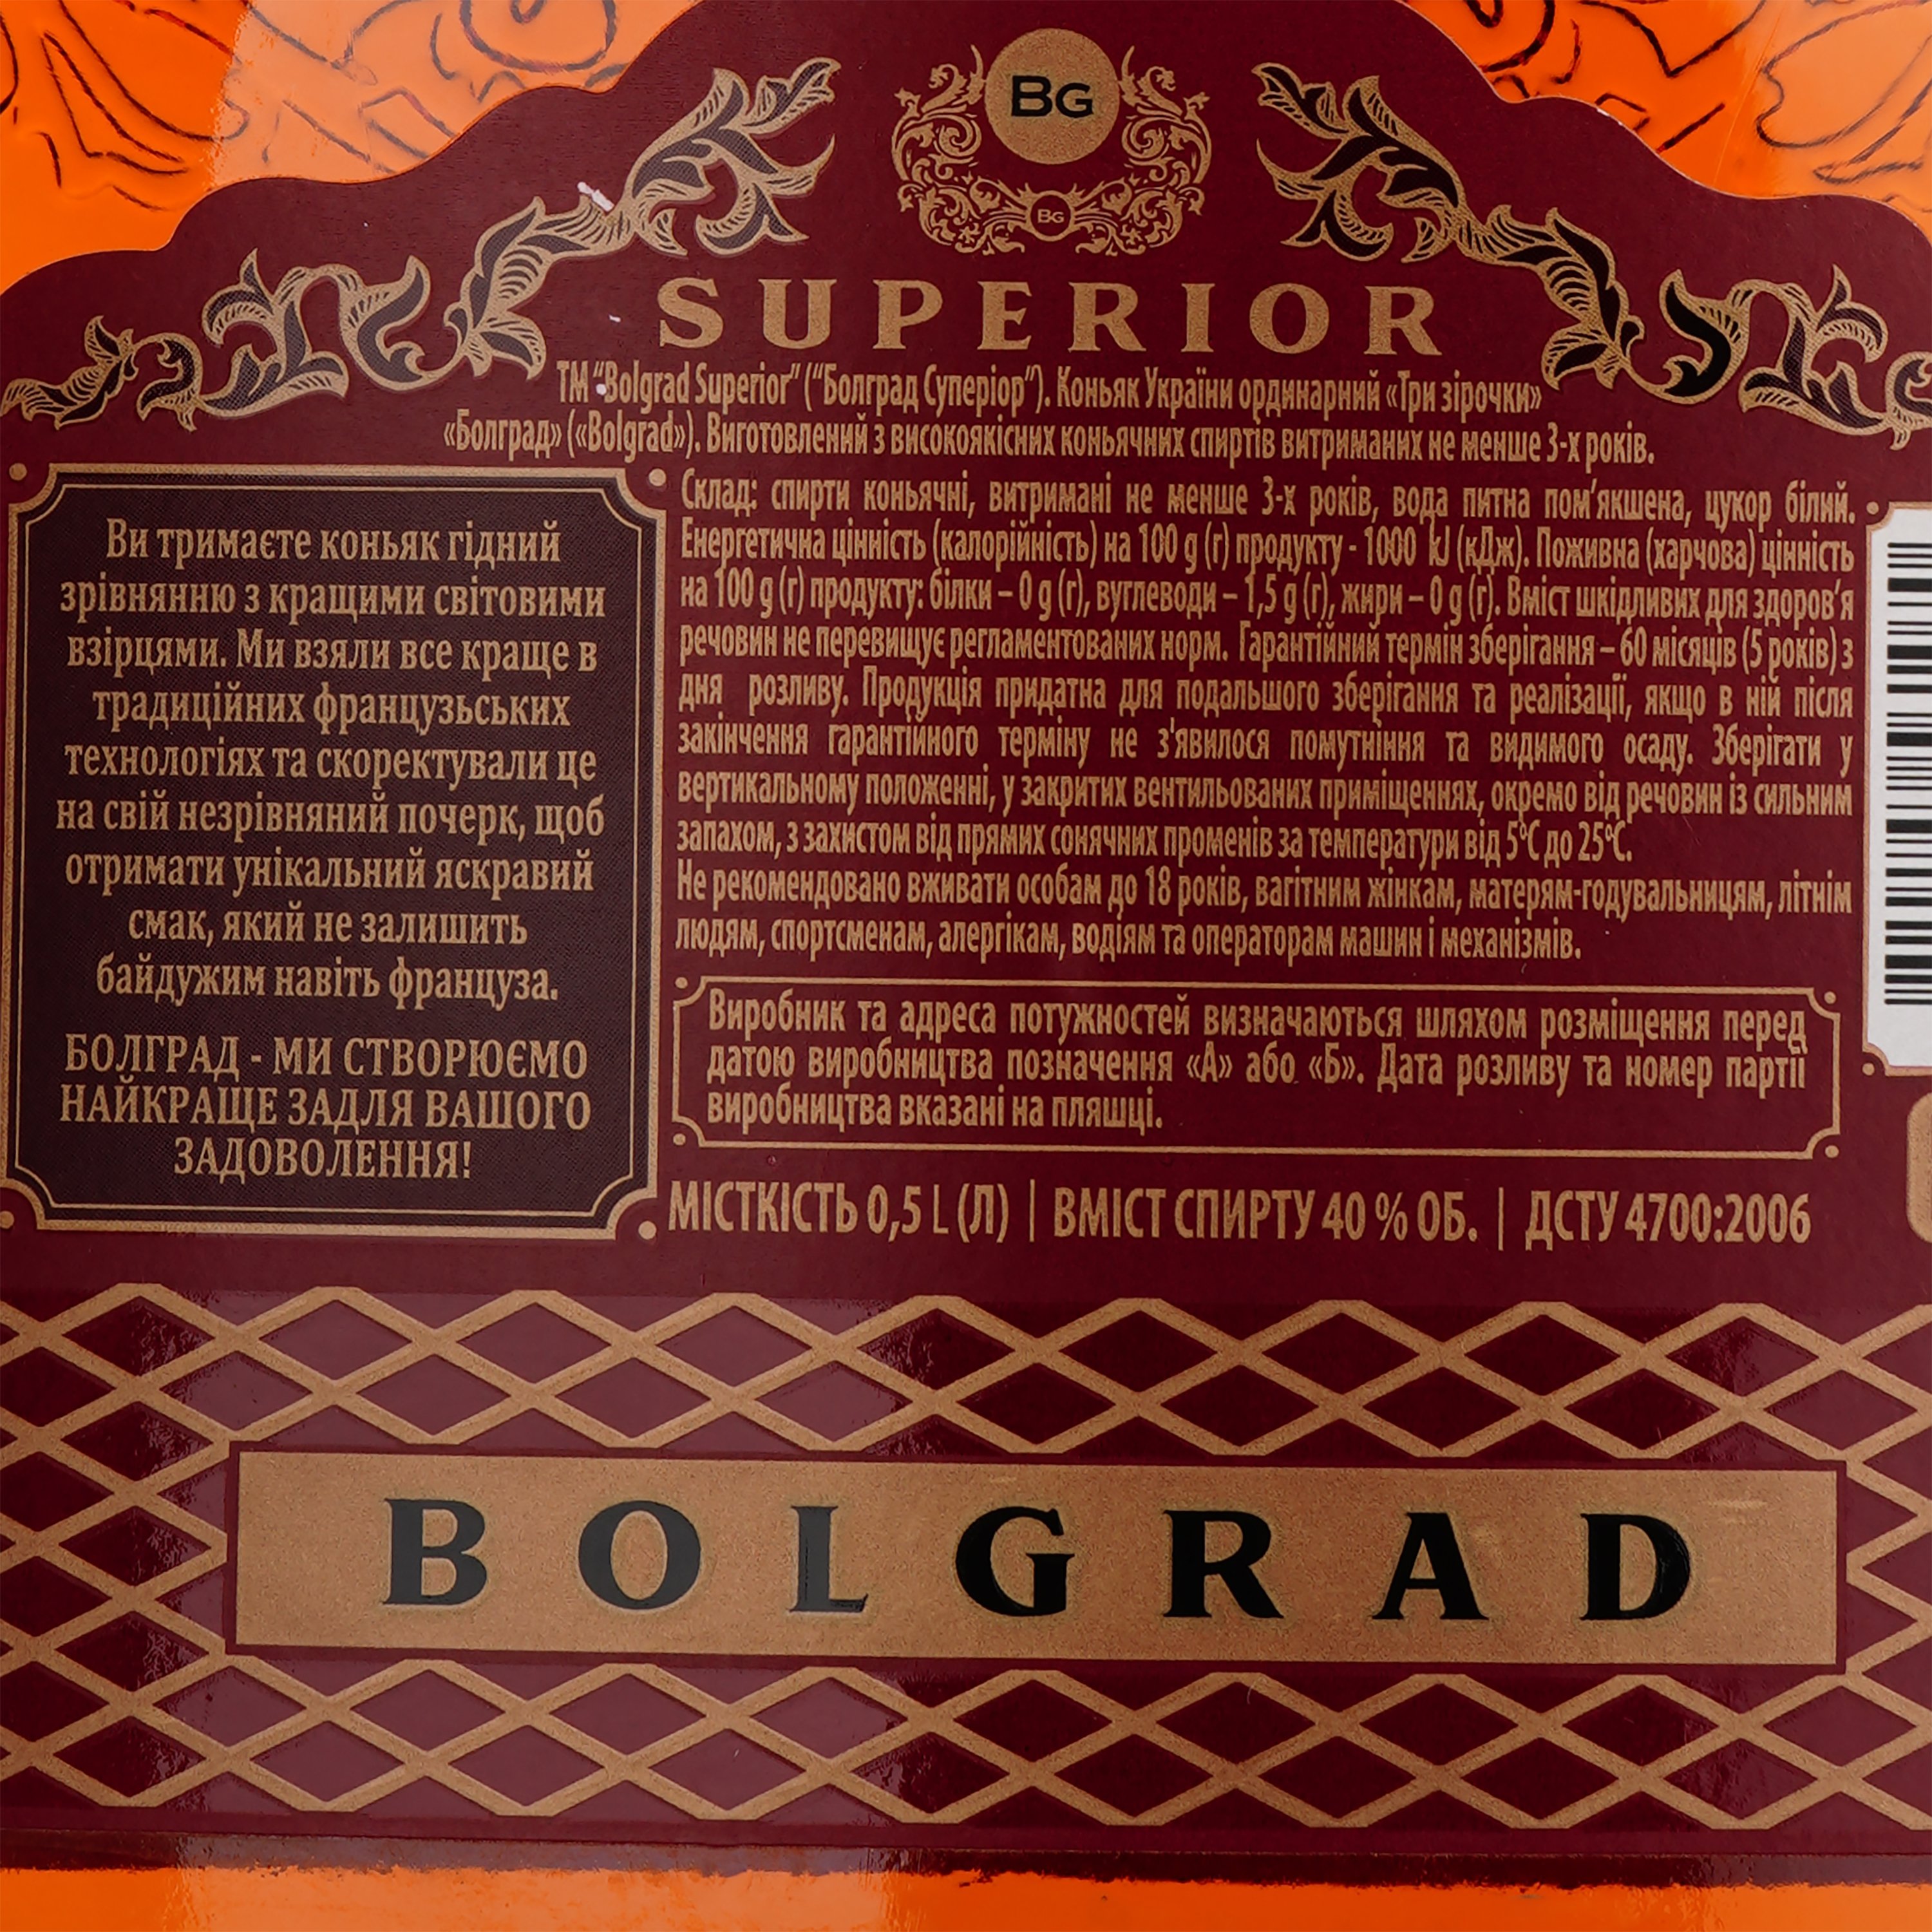 Коньяк Украины Bolgrad Superior, 40 %, 0,5 л (779655) - фото 4